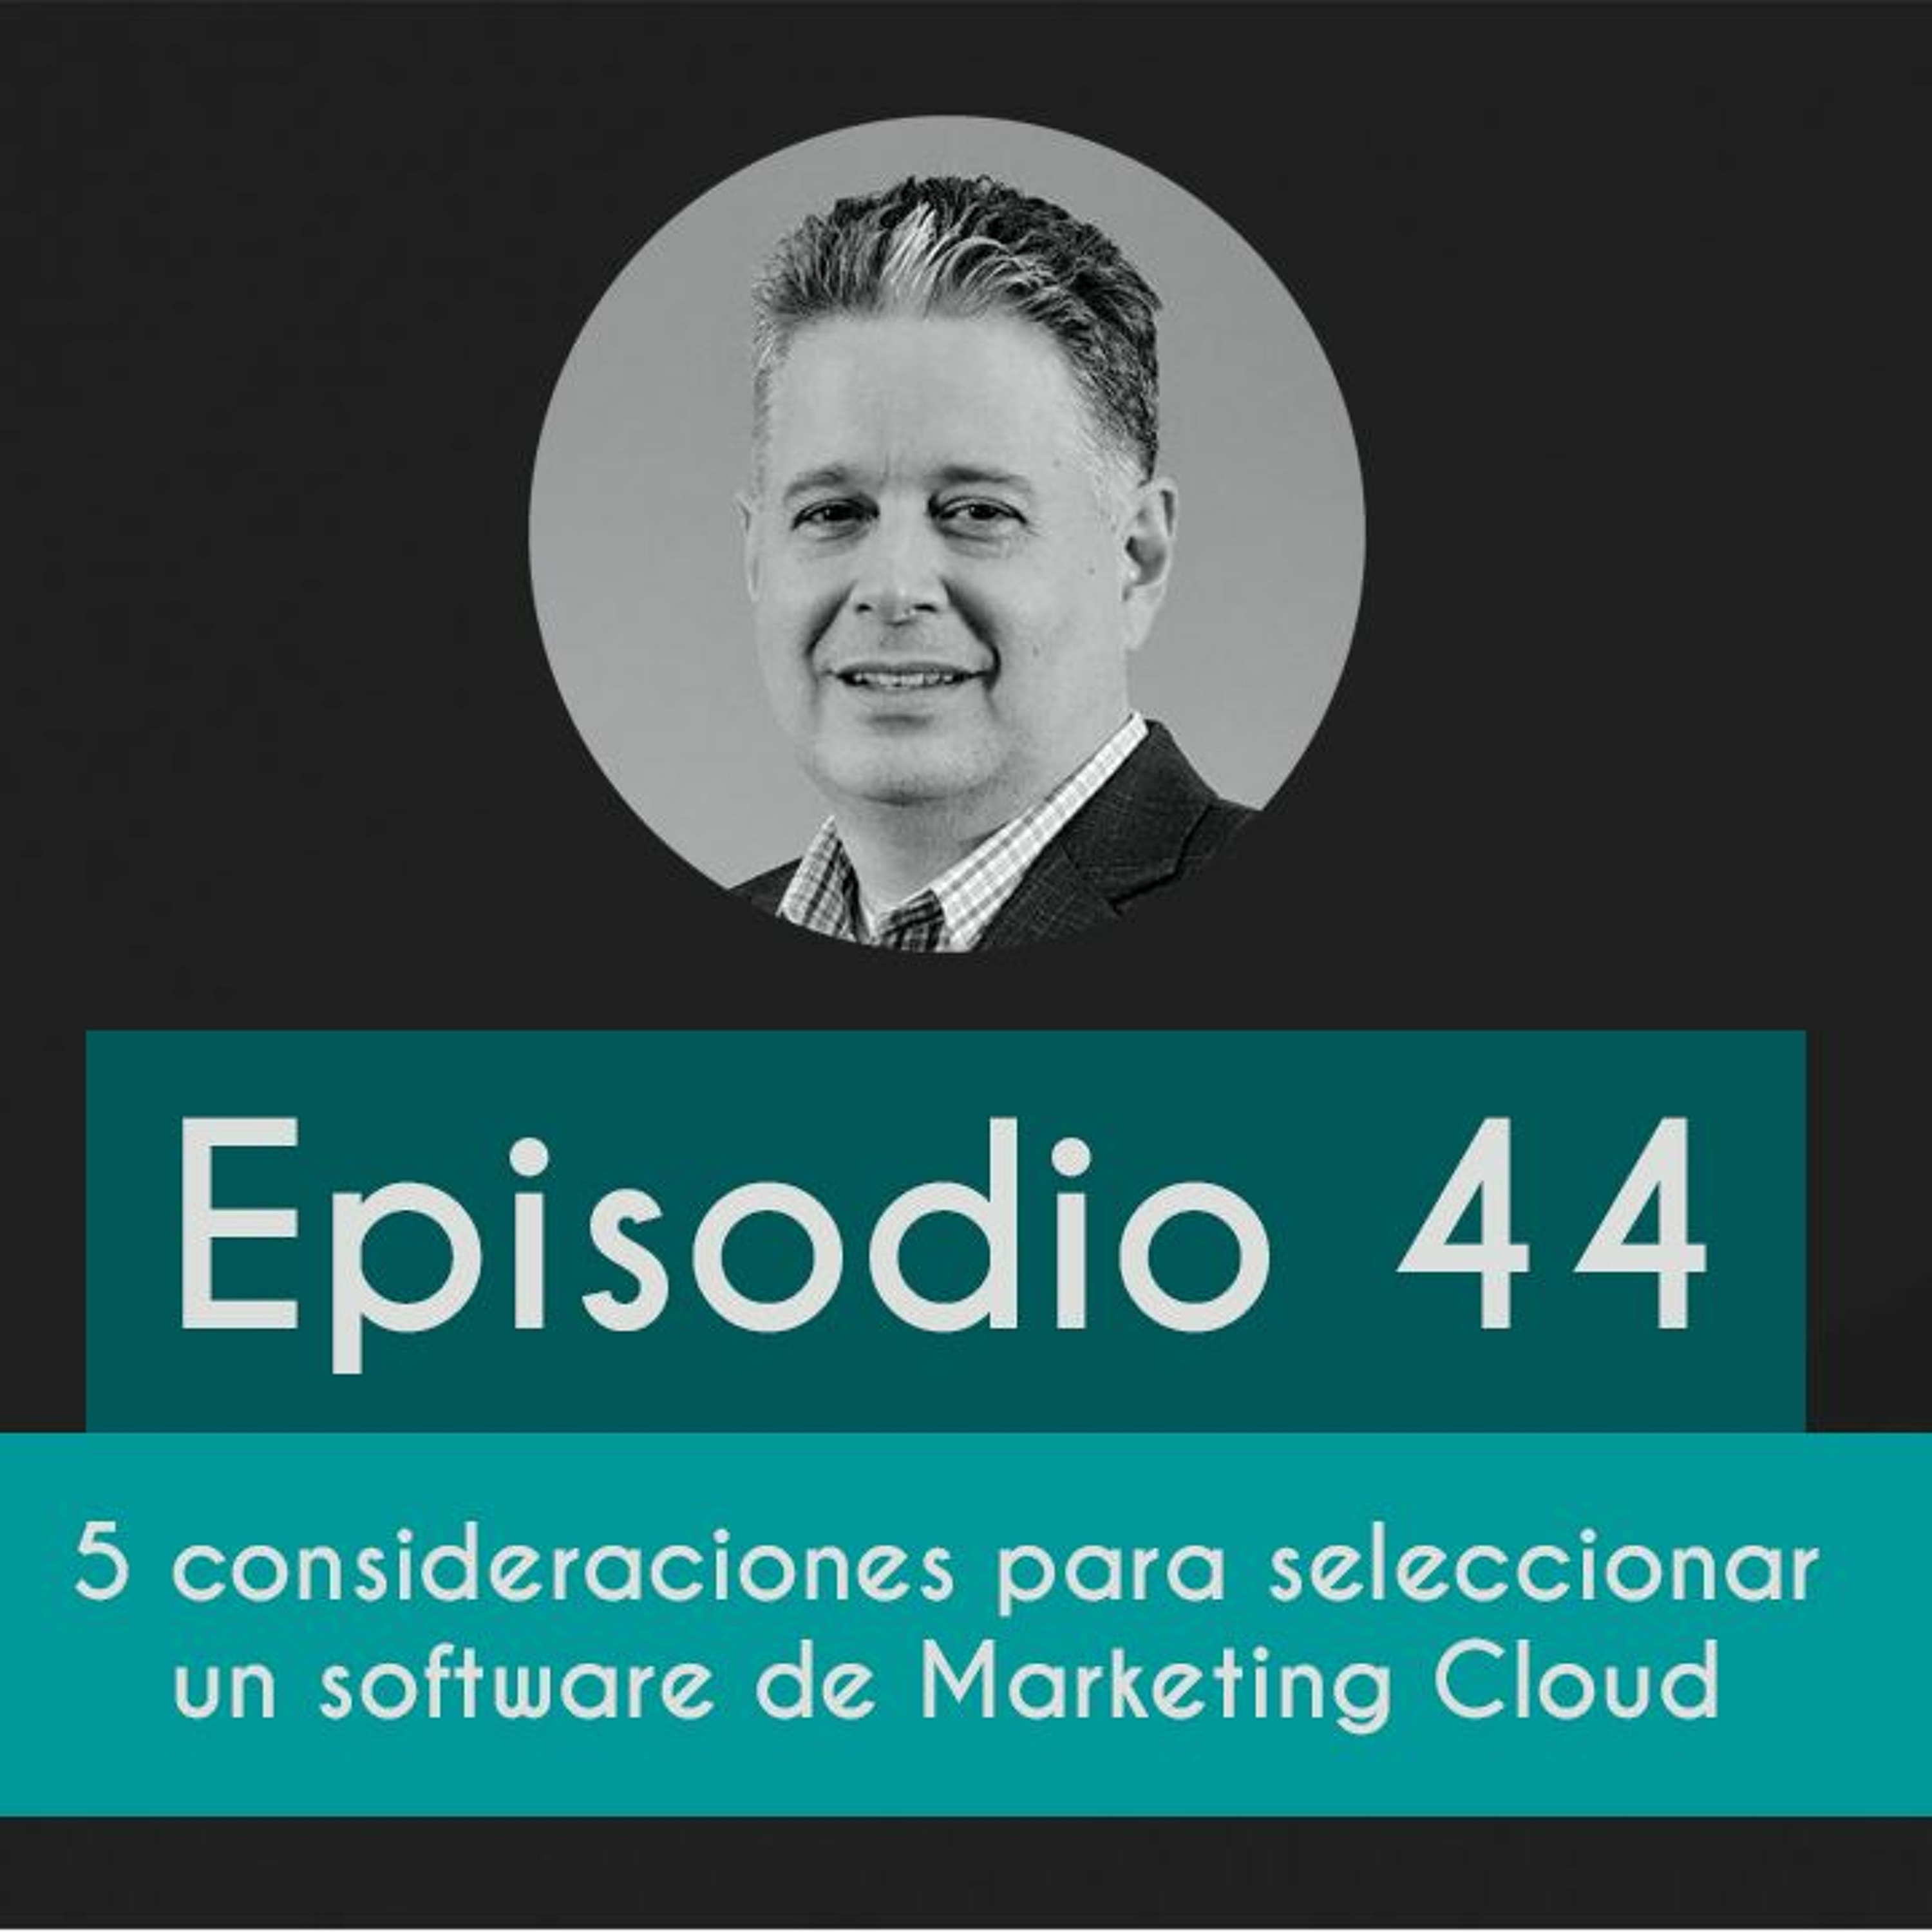 Episodio 44 - Consideraciones para seleccionar un Marketing Cloud Image